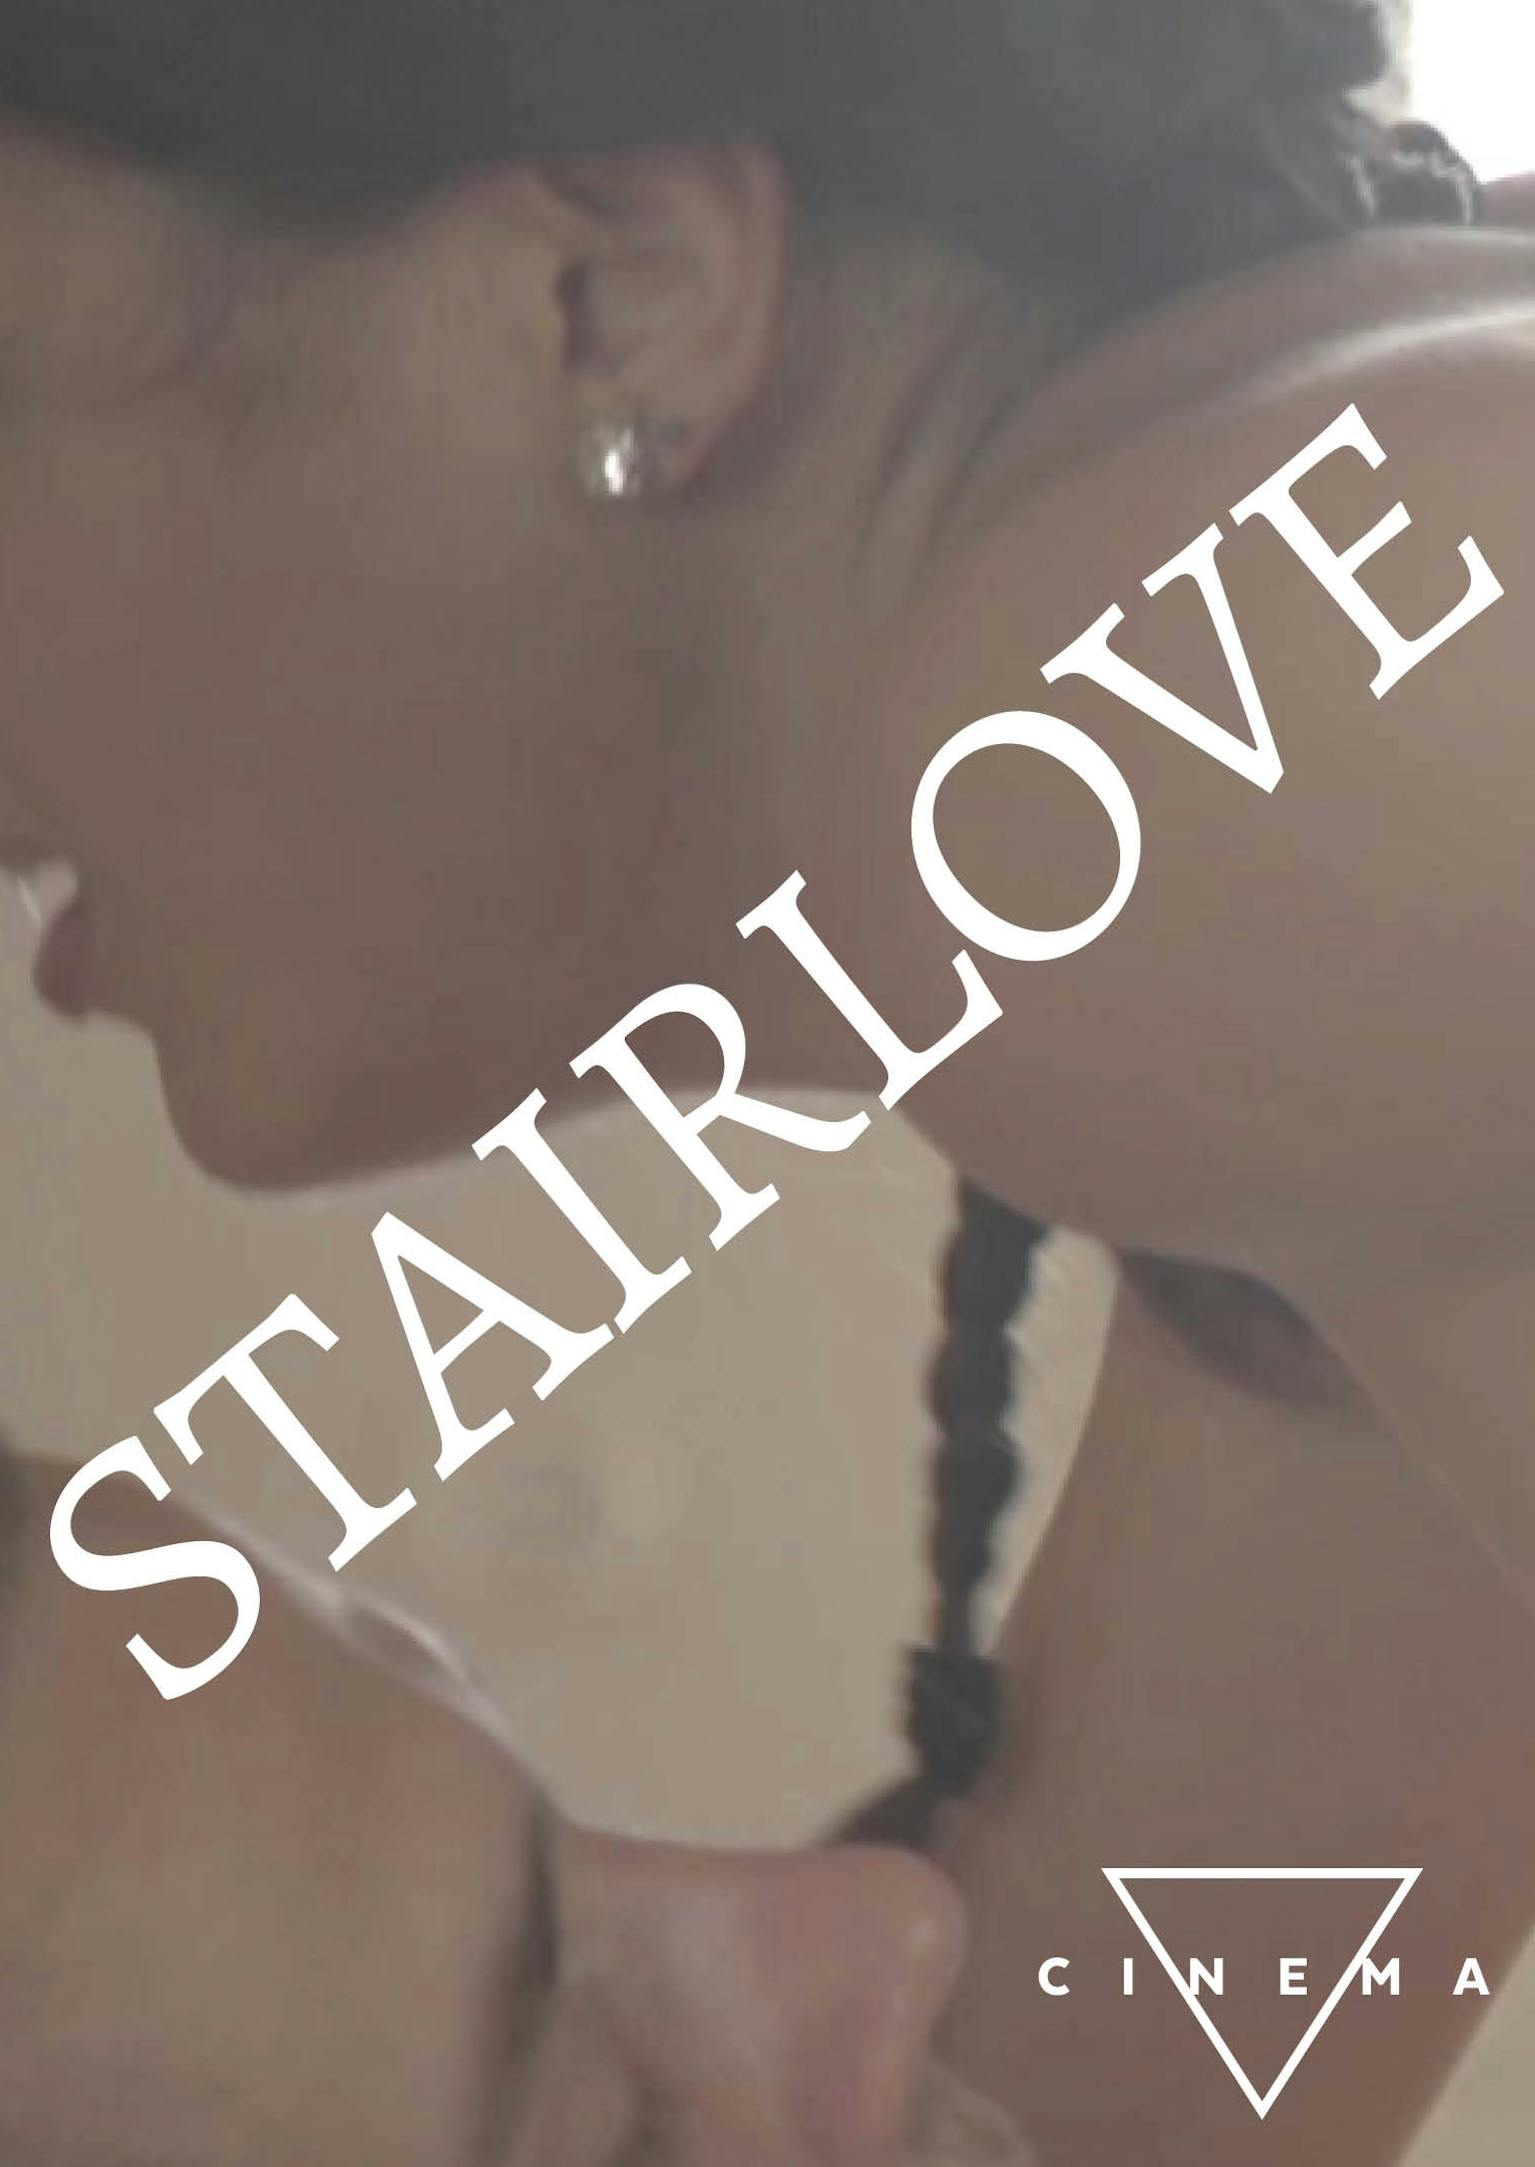 Stairlove